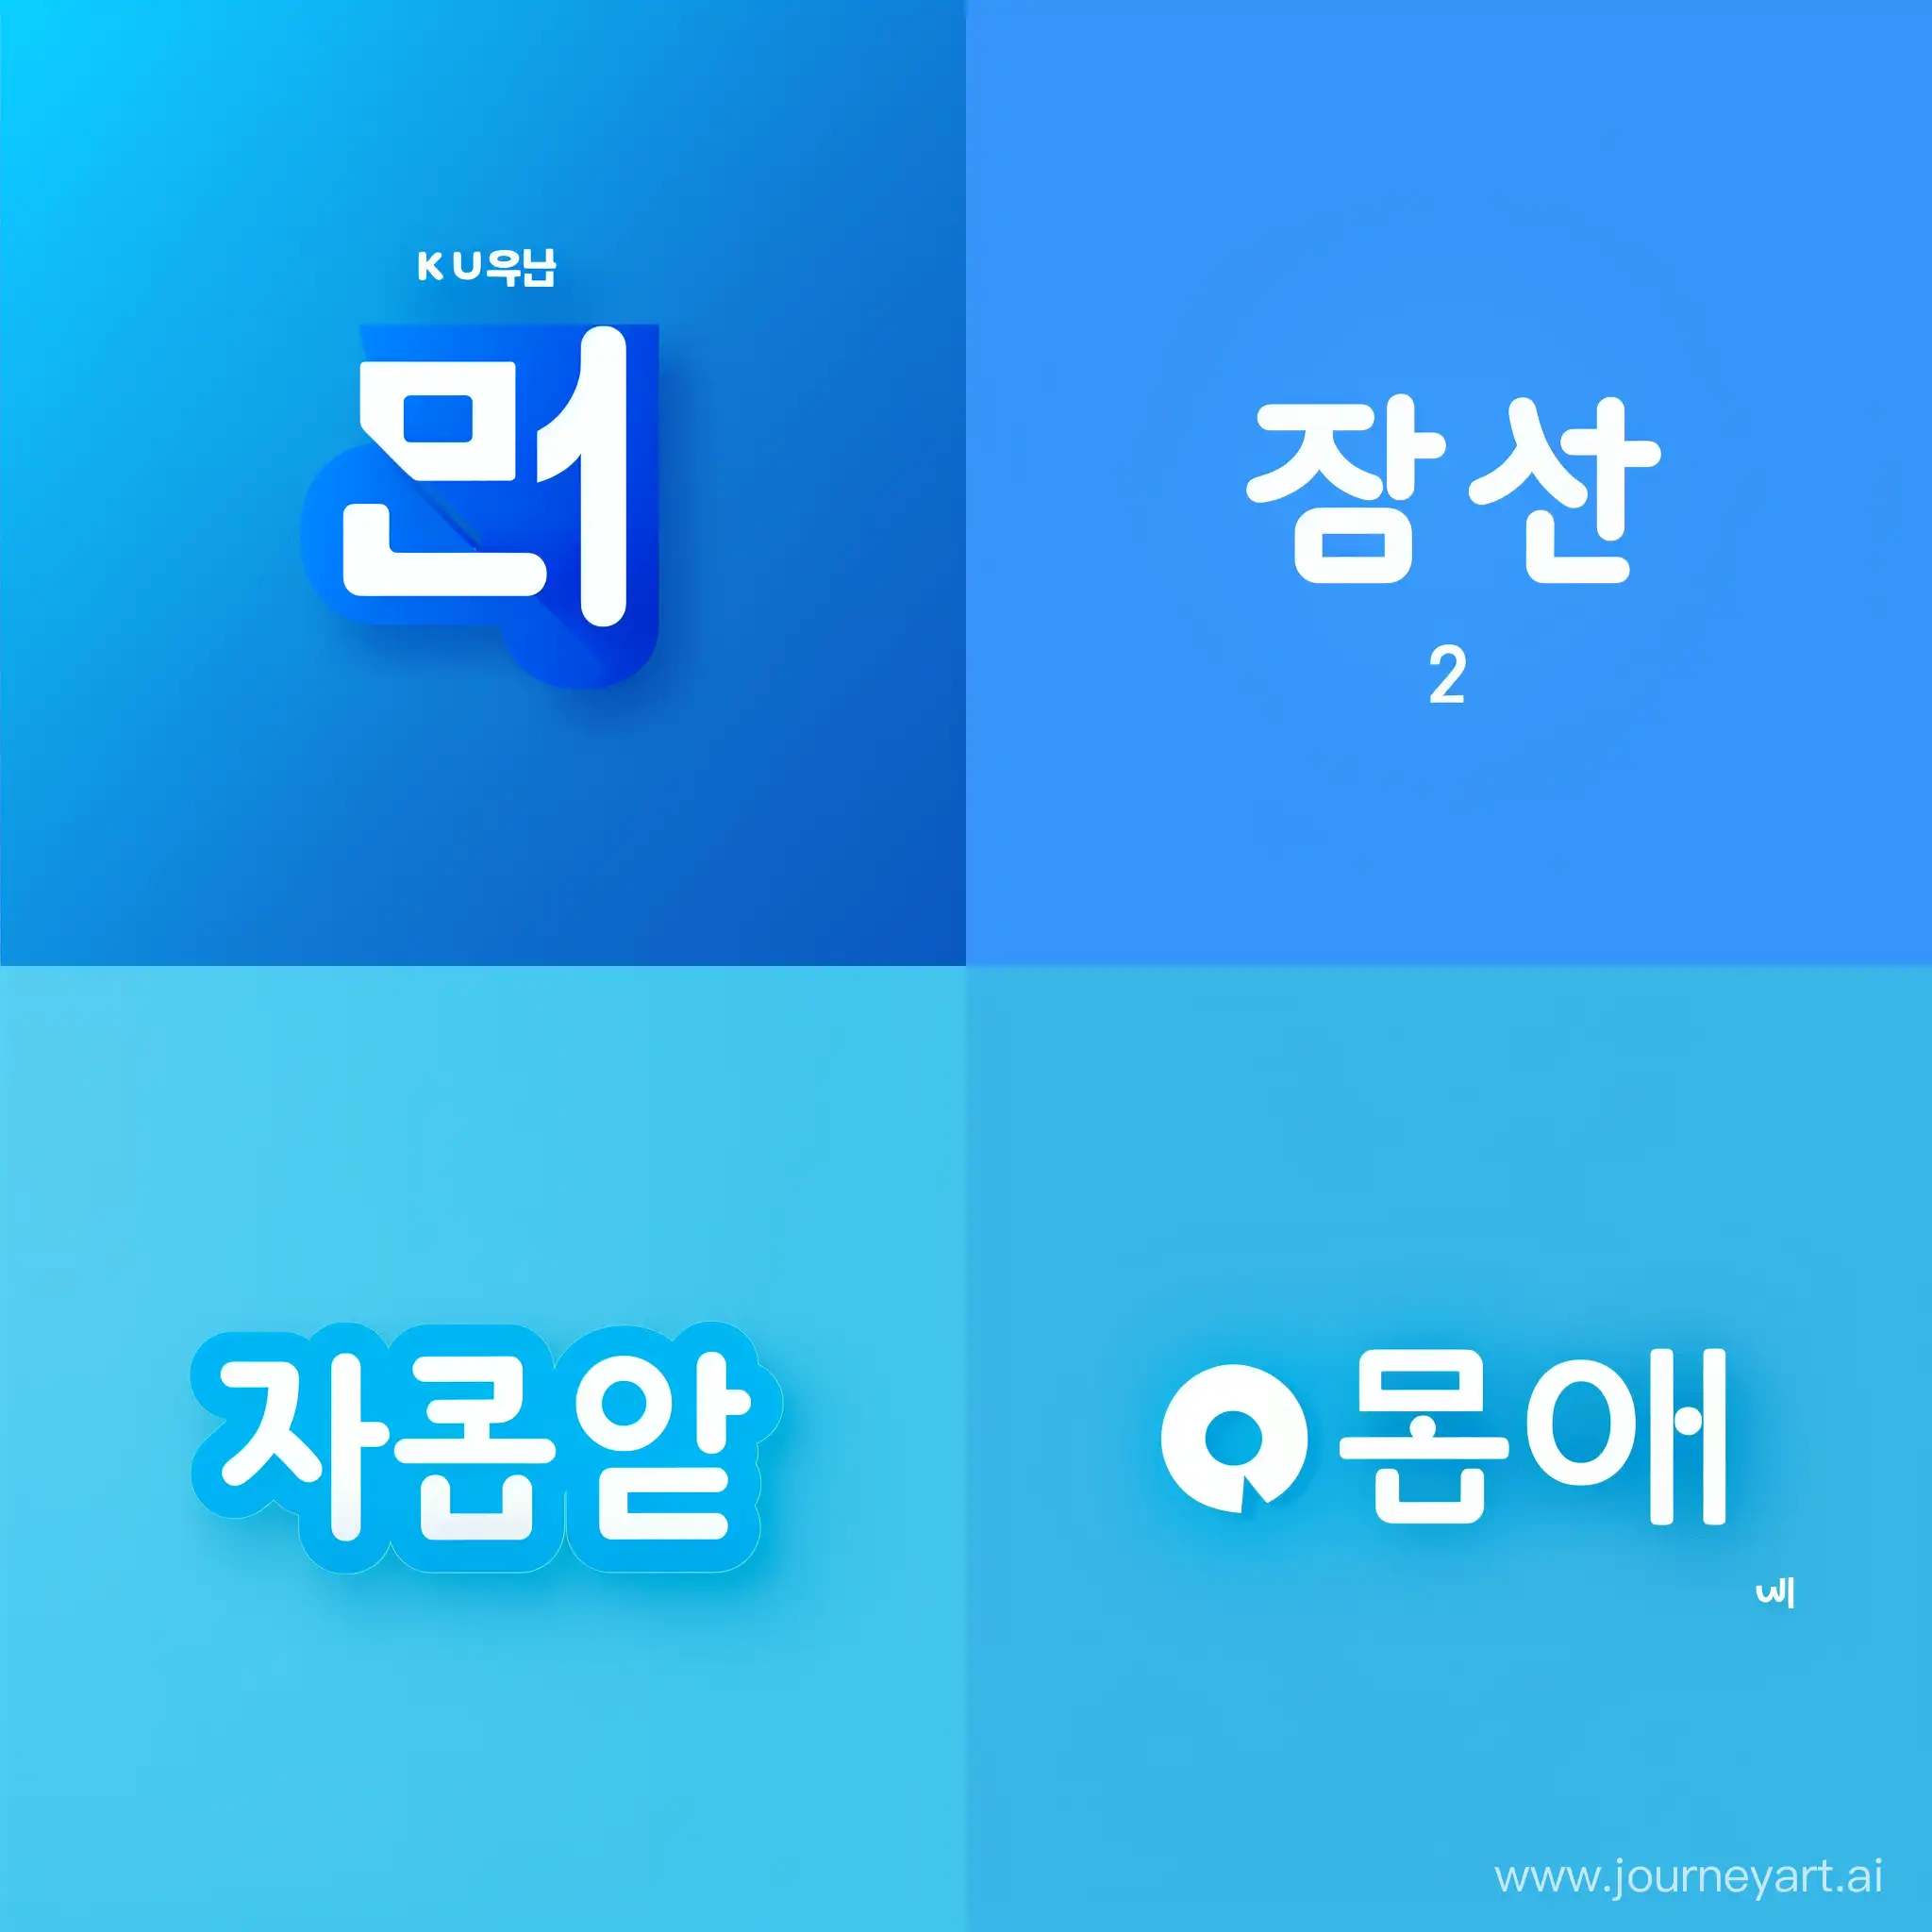 нужен логотип на синем фоне с надписью корейские аккаунты